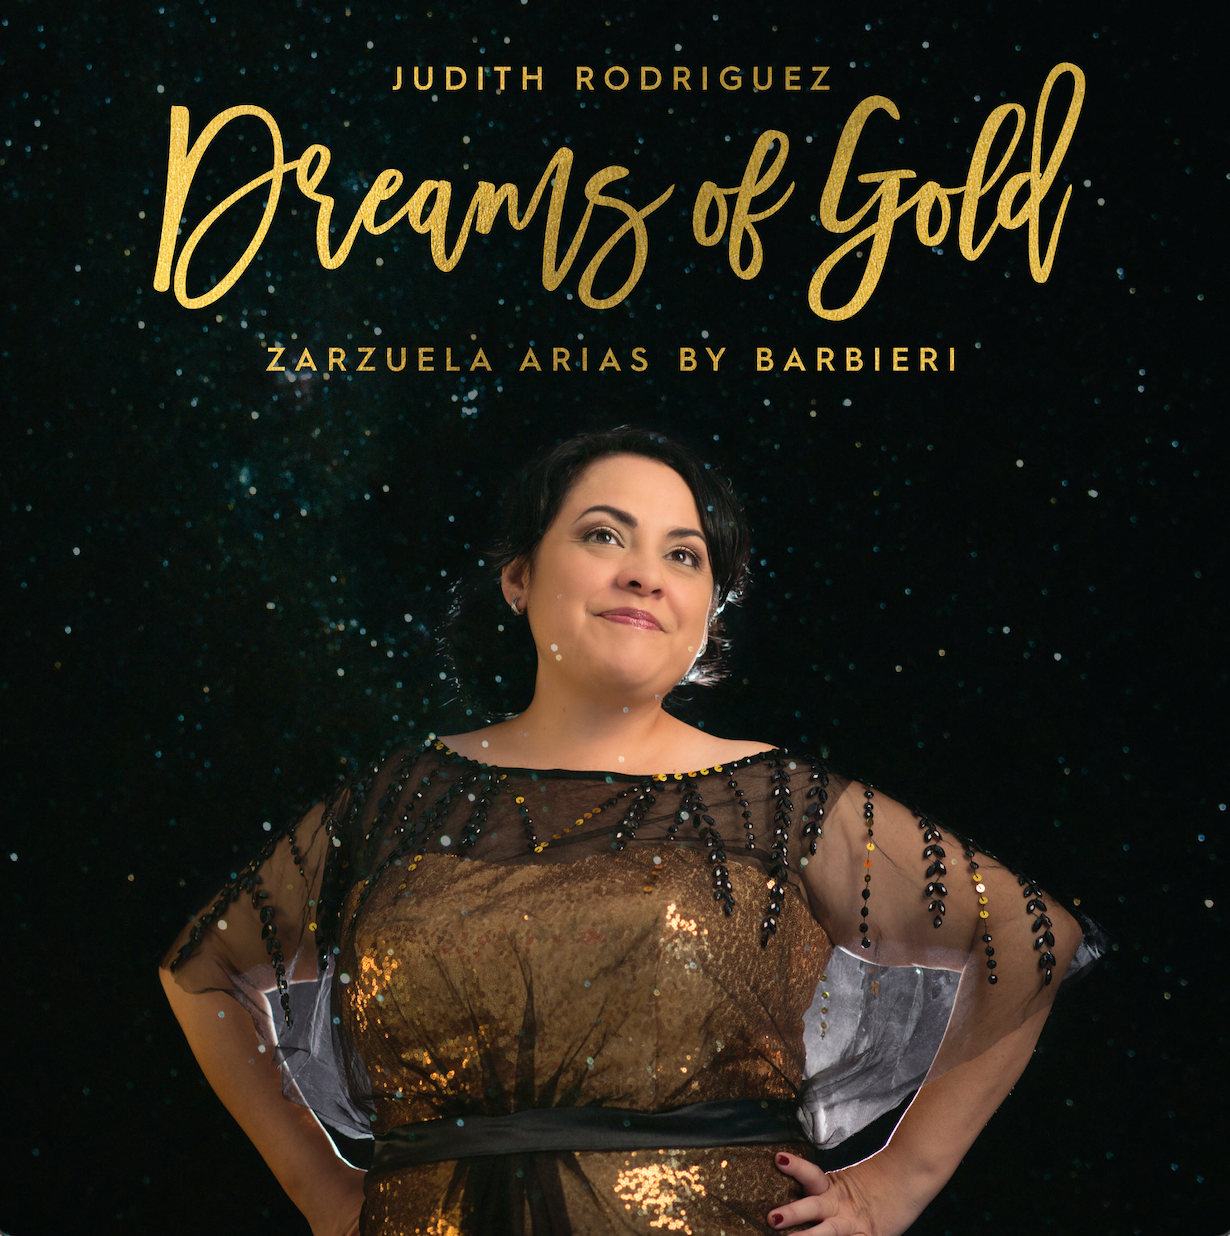 Portada del álbum "Dream of Gold" de Judith Rodríguez / Foto: Cortesía de la artista